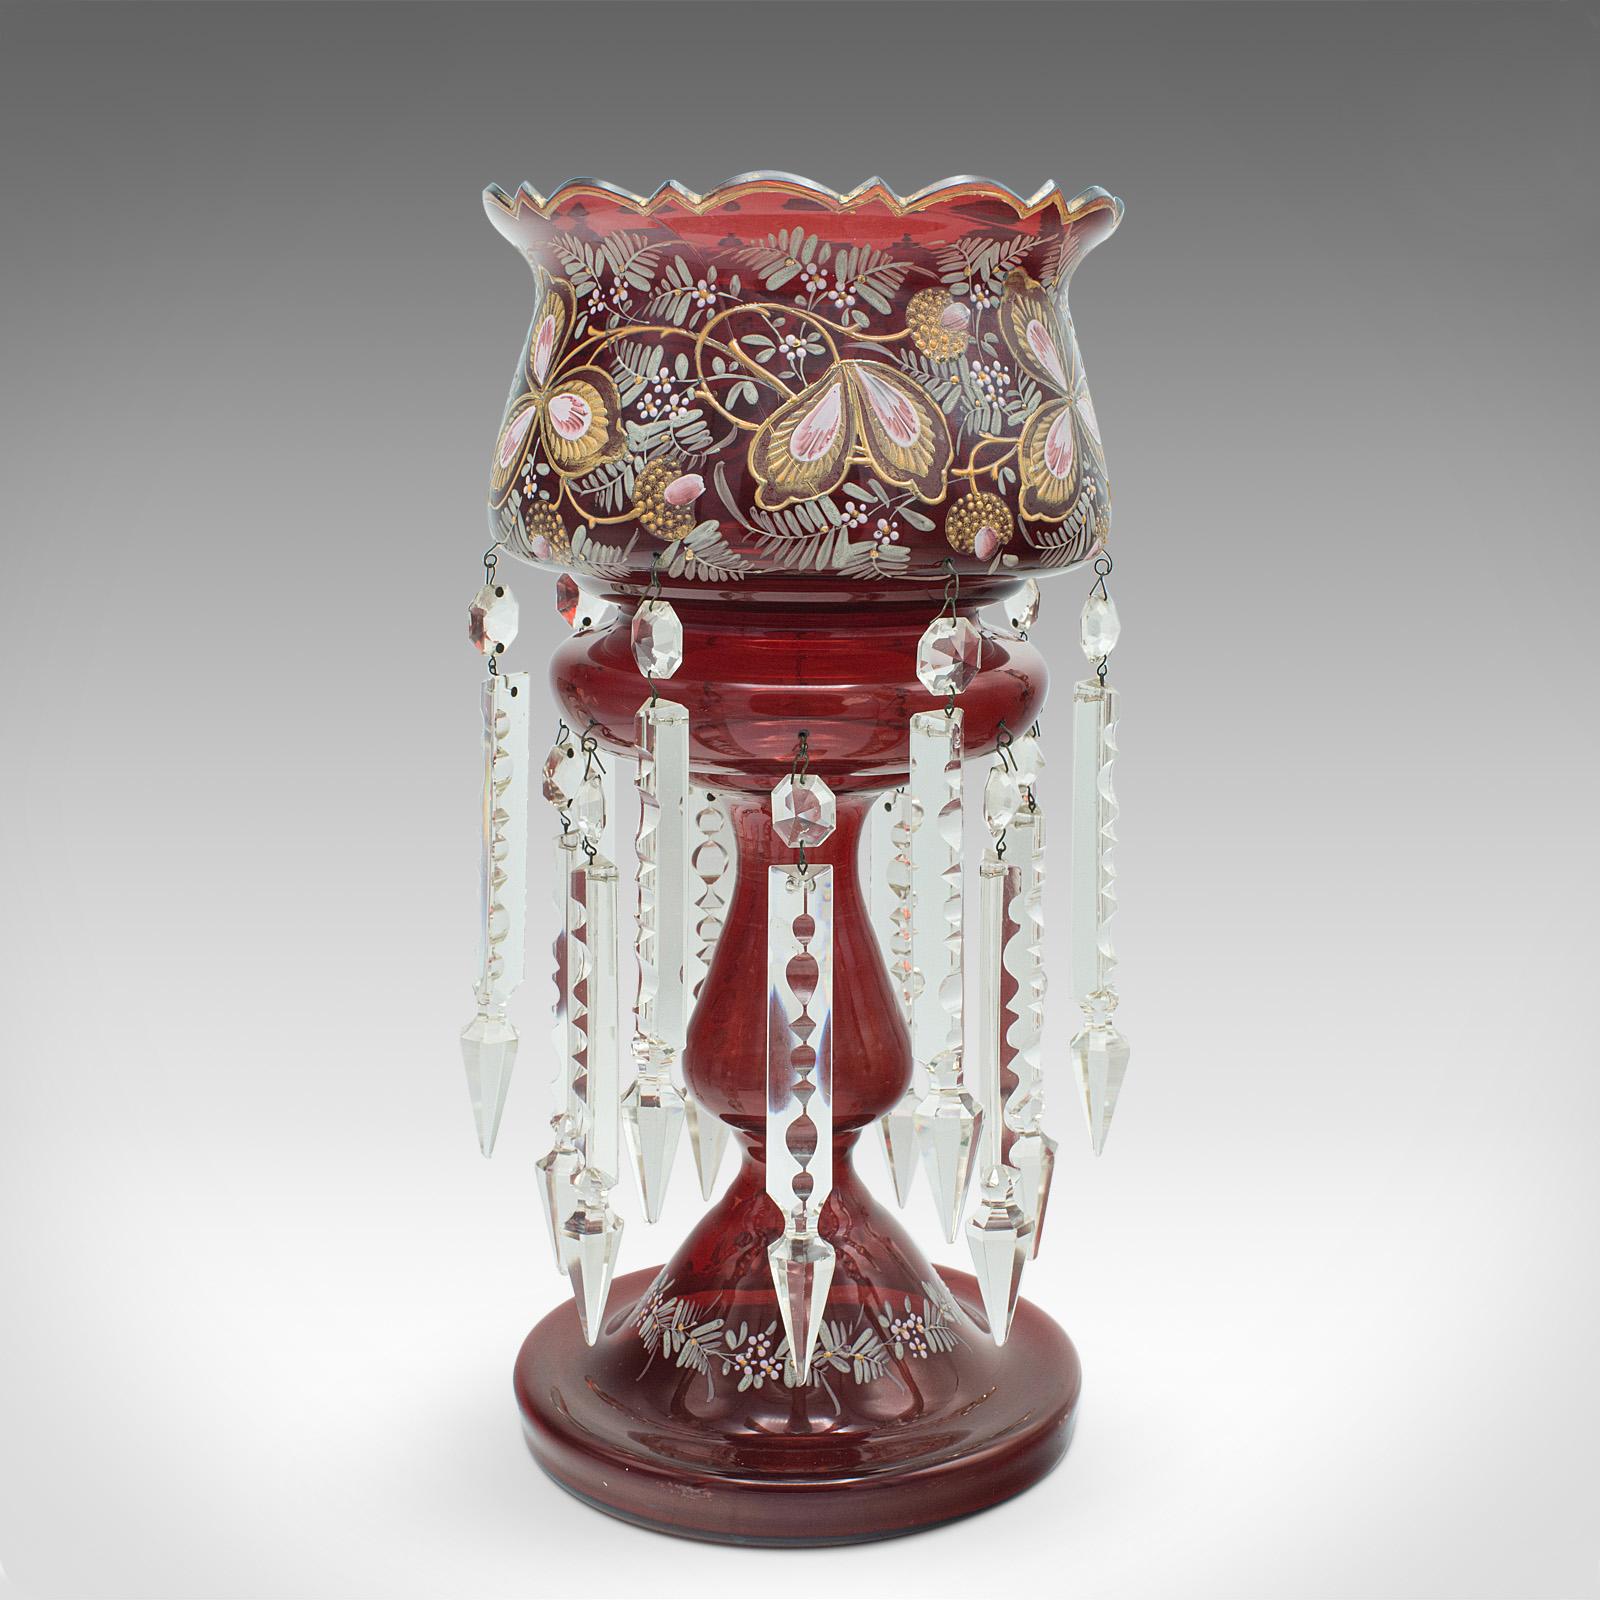 Dies ist ein antiker Cranberry-Lüster. Eine englische, dekorative Kerzenlampe aus Glas und Kristall, aus der späten viktorianischen Zeit, um 1900.

Wunderschöne Farbtiefe und auffallender Kristallglanz
Zeigt eine wünschenswerte gealterte Patina und